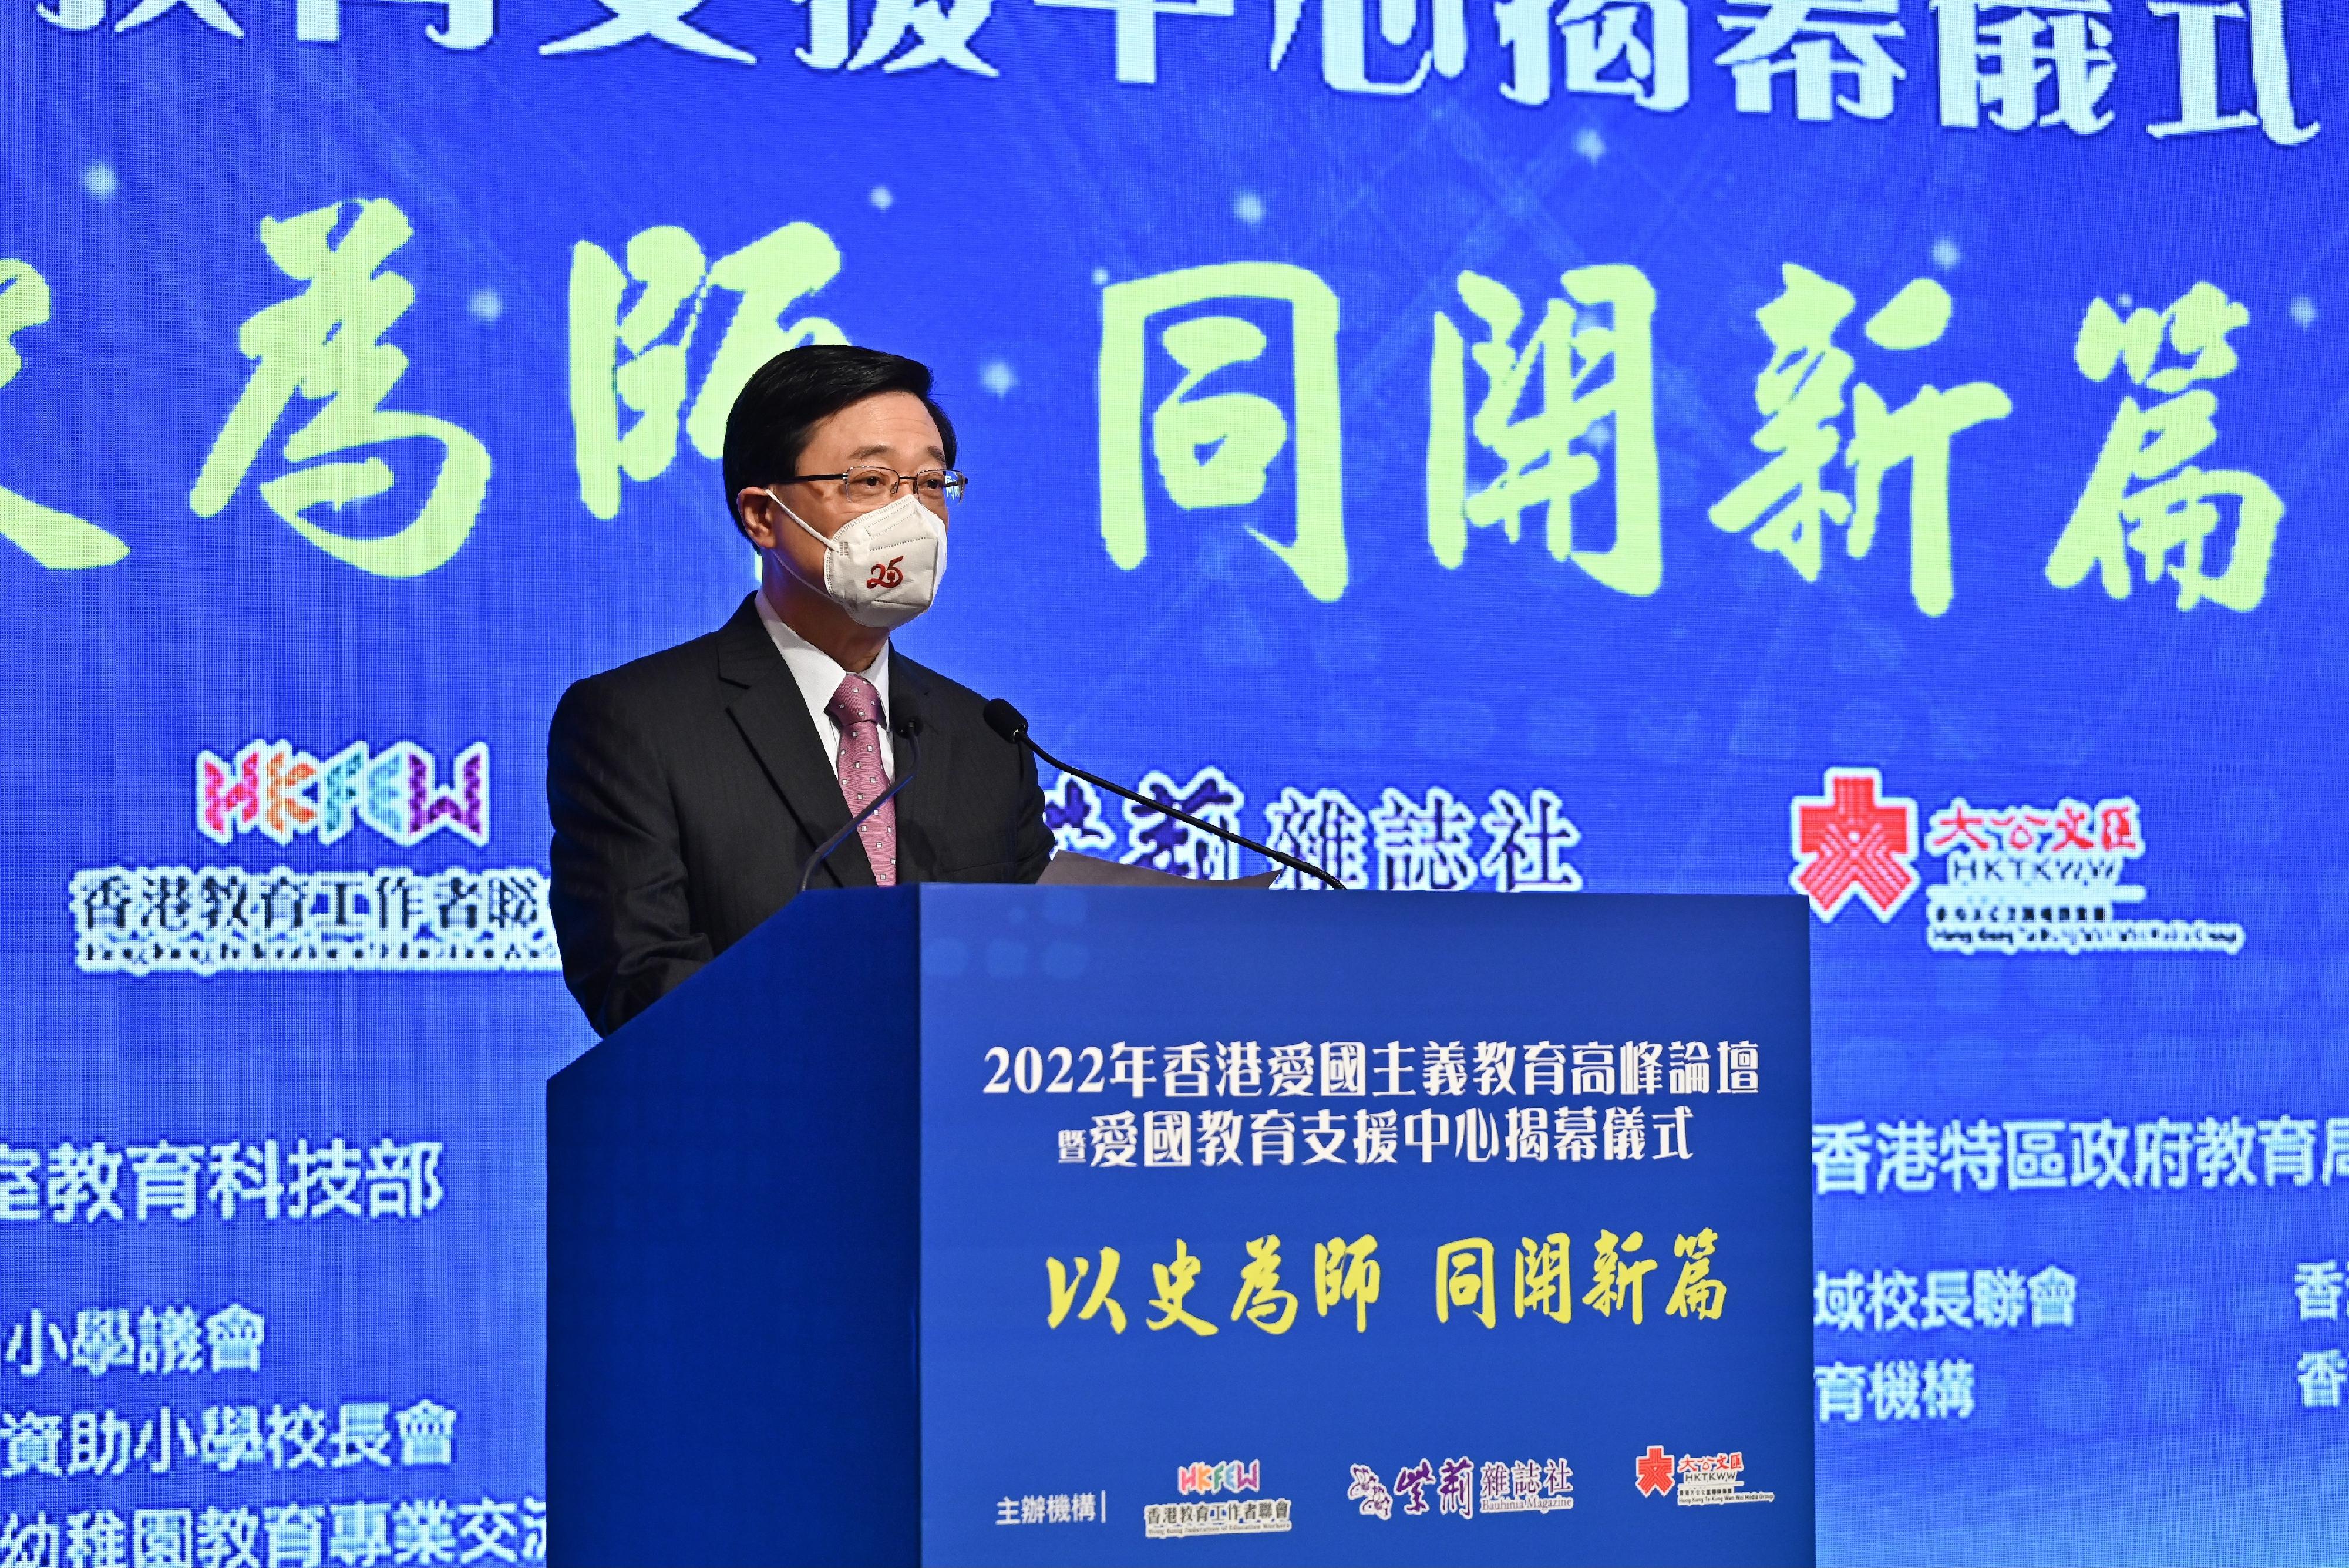 行政長官李家超今日（七月十六日）在2022年香港愛國主義教育高峰論壇暨愛國教育支援中心揭幕儀式致辭。

